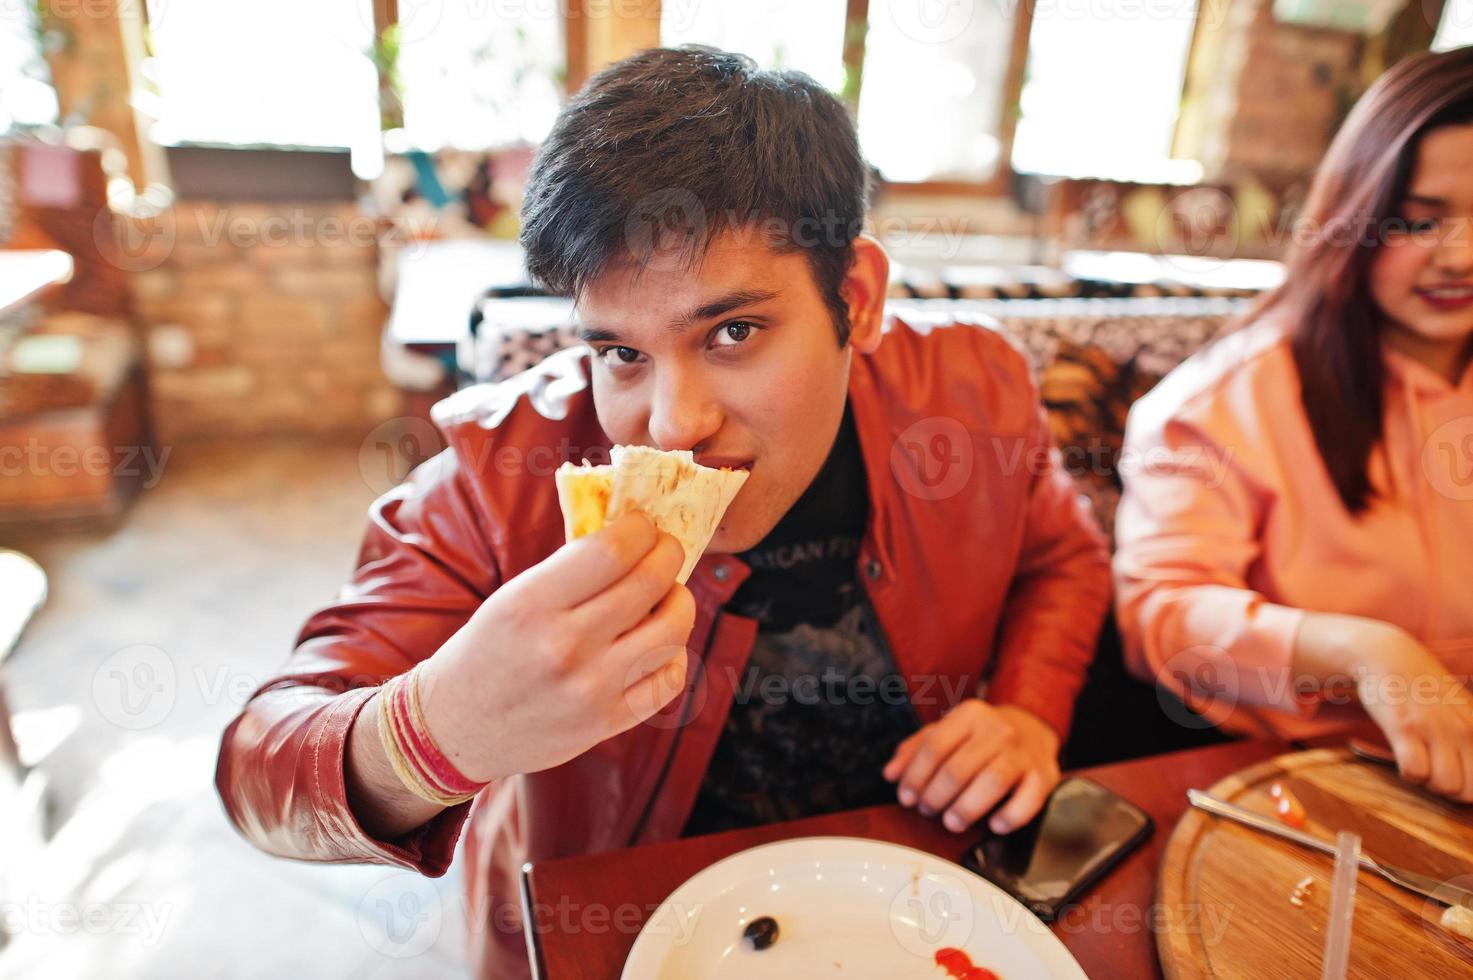 coppia di amici asiatici che mangiano pizza durante la festa in pizzeria. felici indiani che si divertono insieme, mangiano cibo italiano e si siedono sul divano. foto